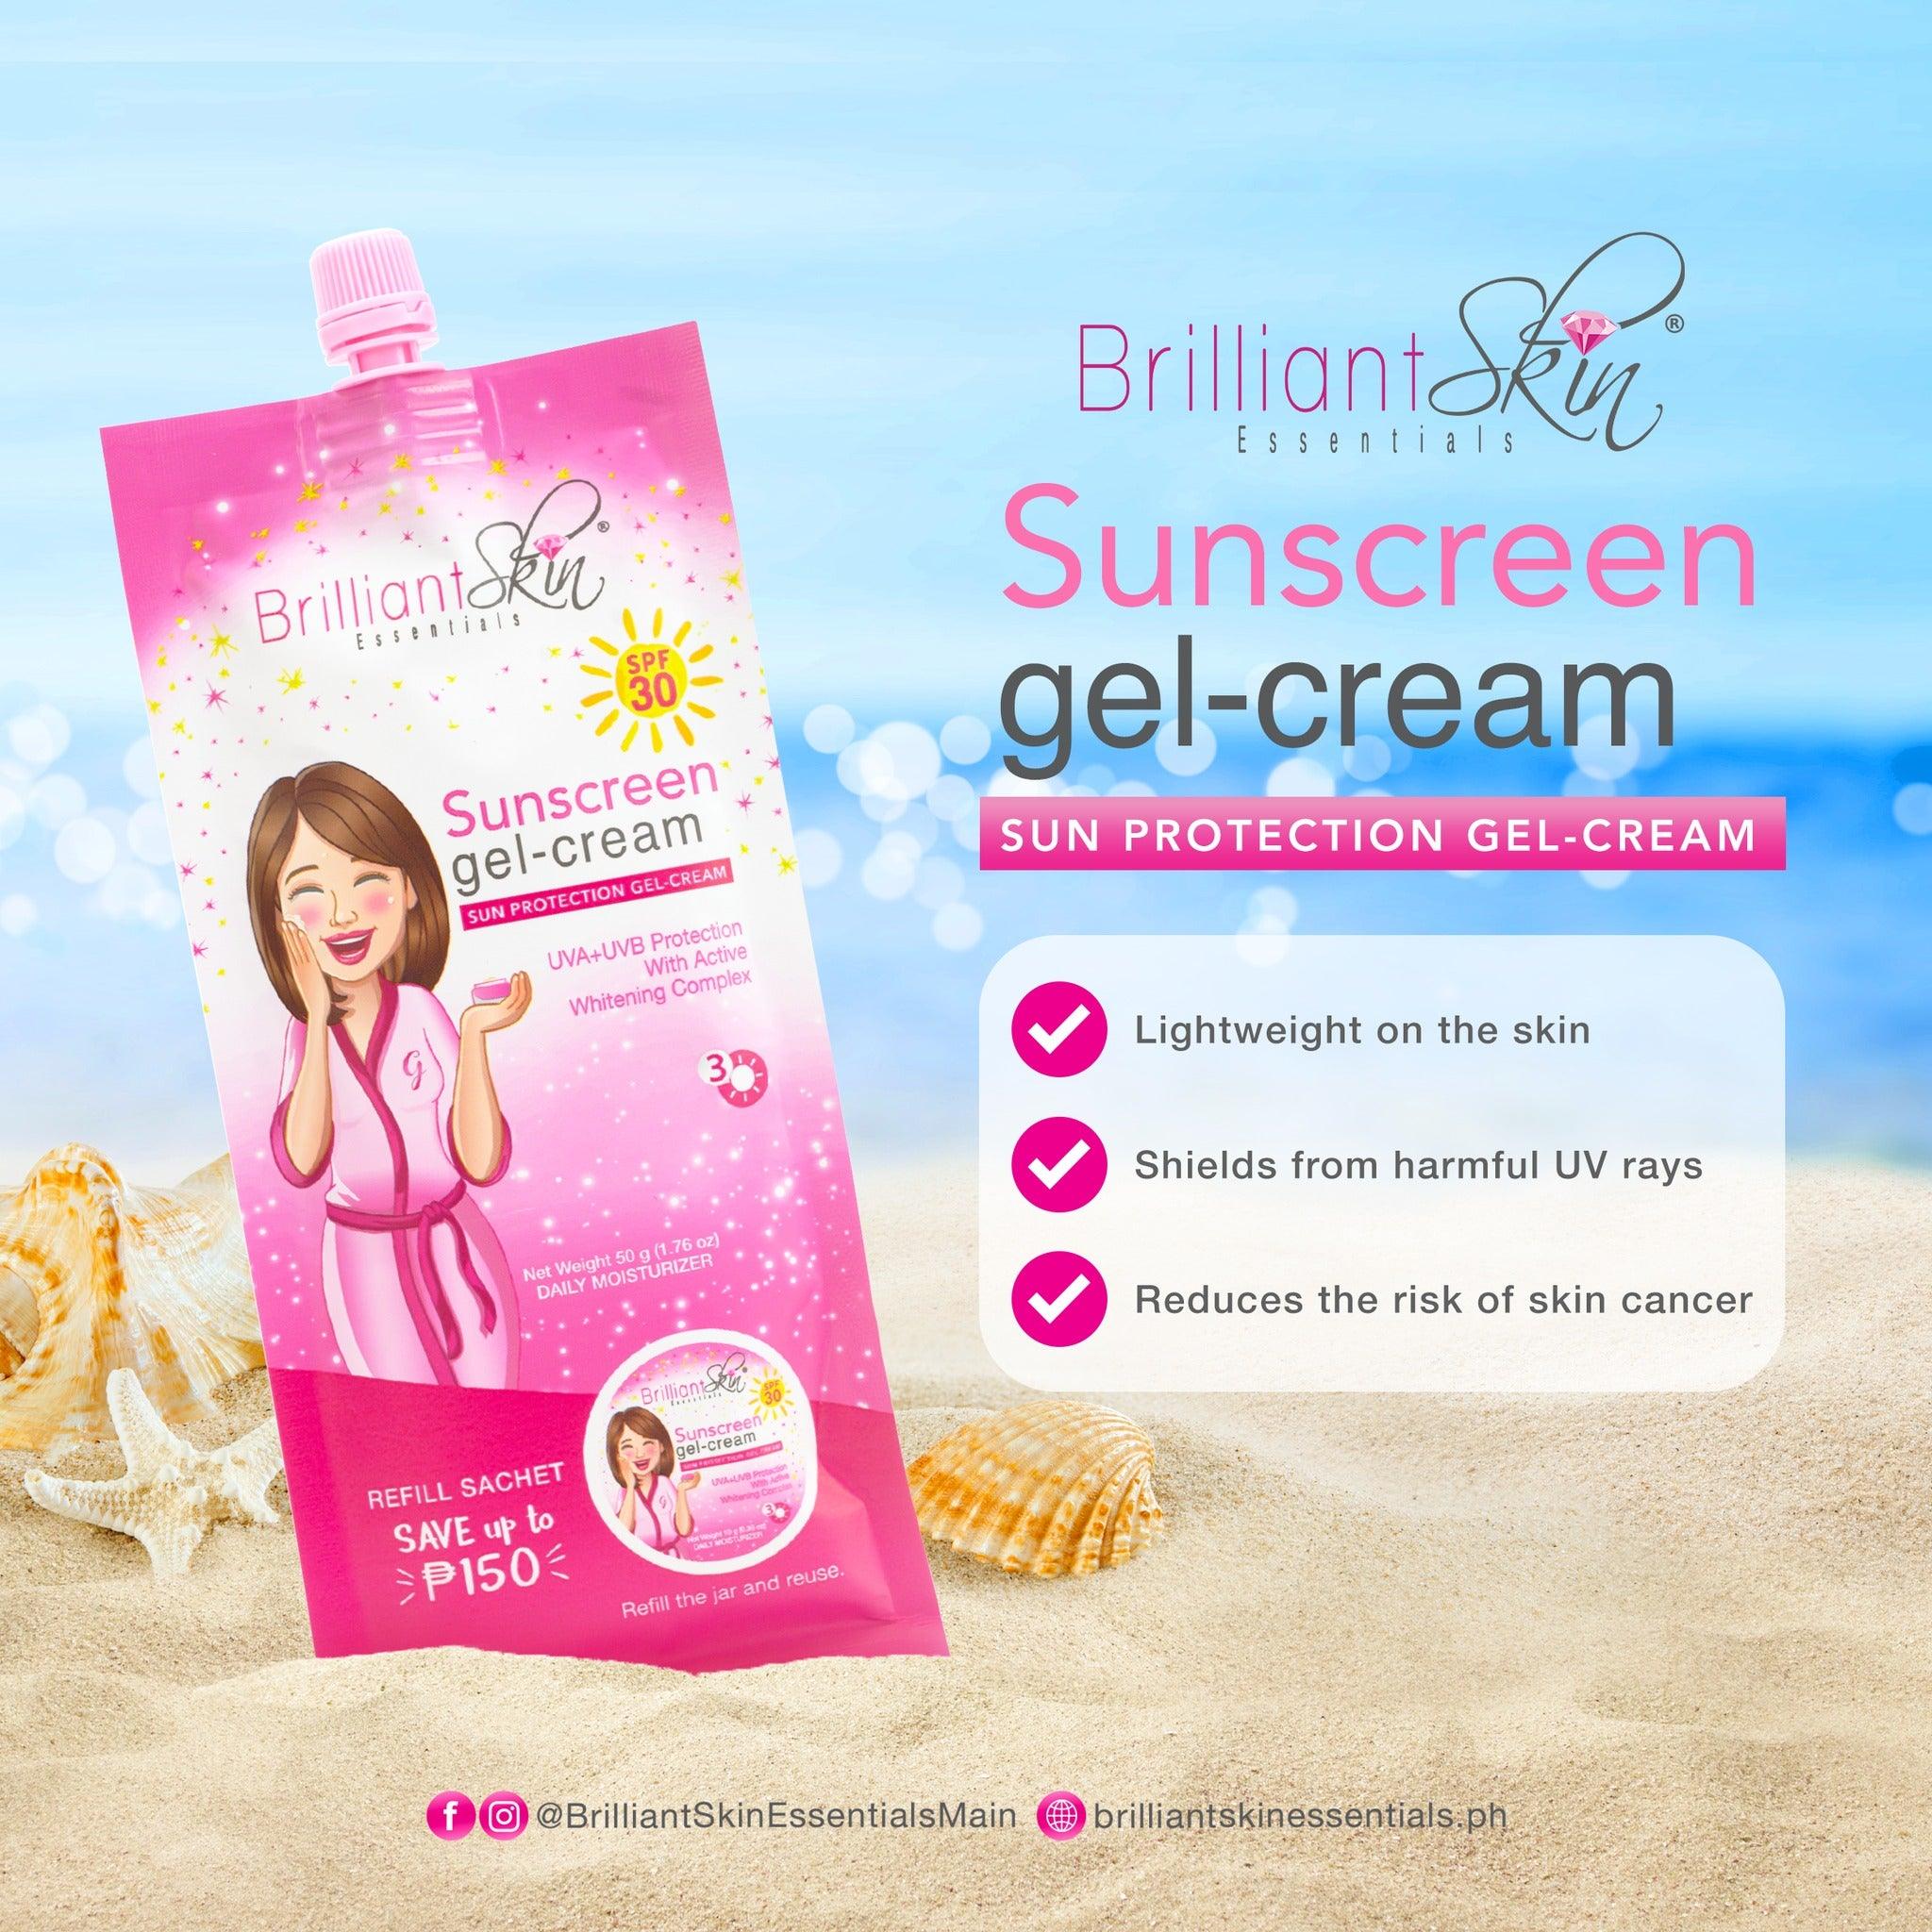 Brilliant Skin Essentials Inc.